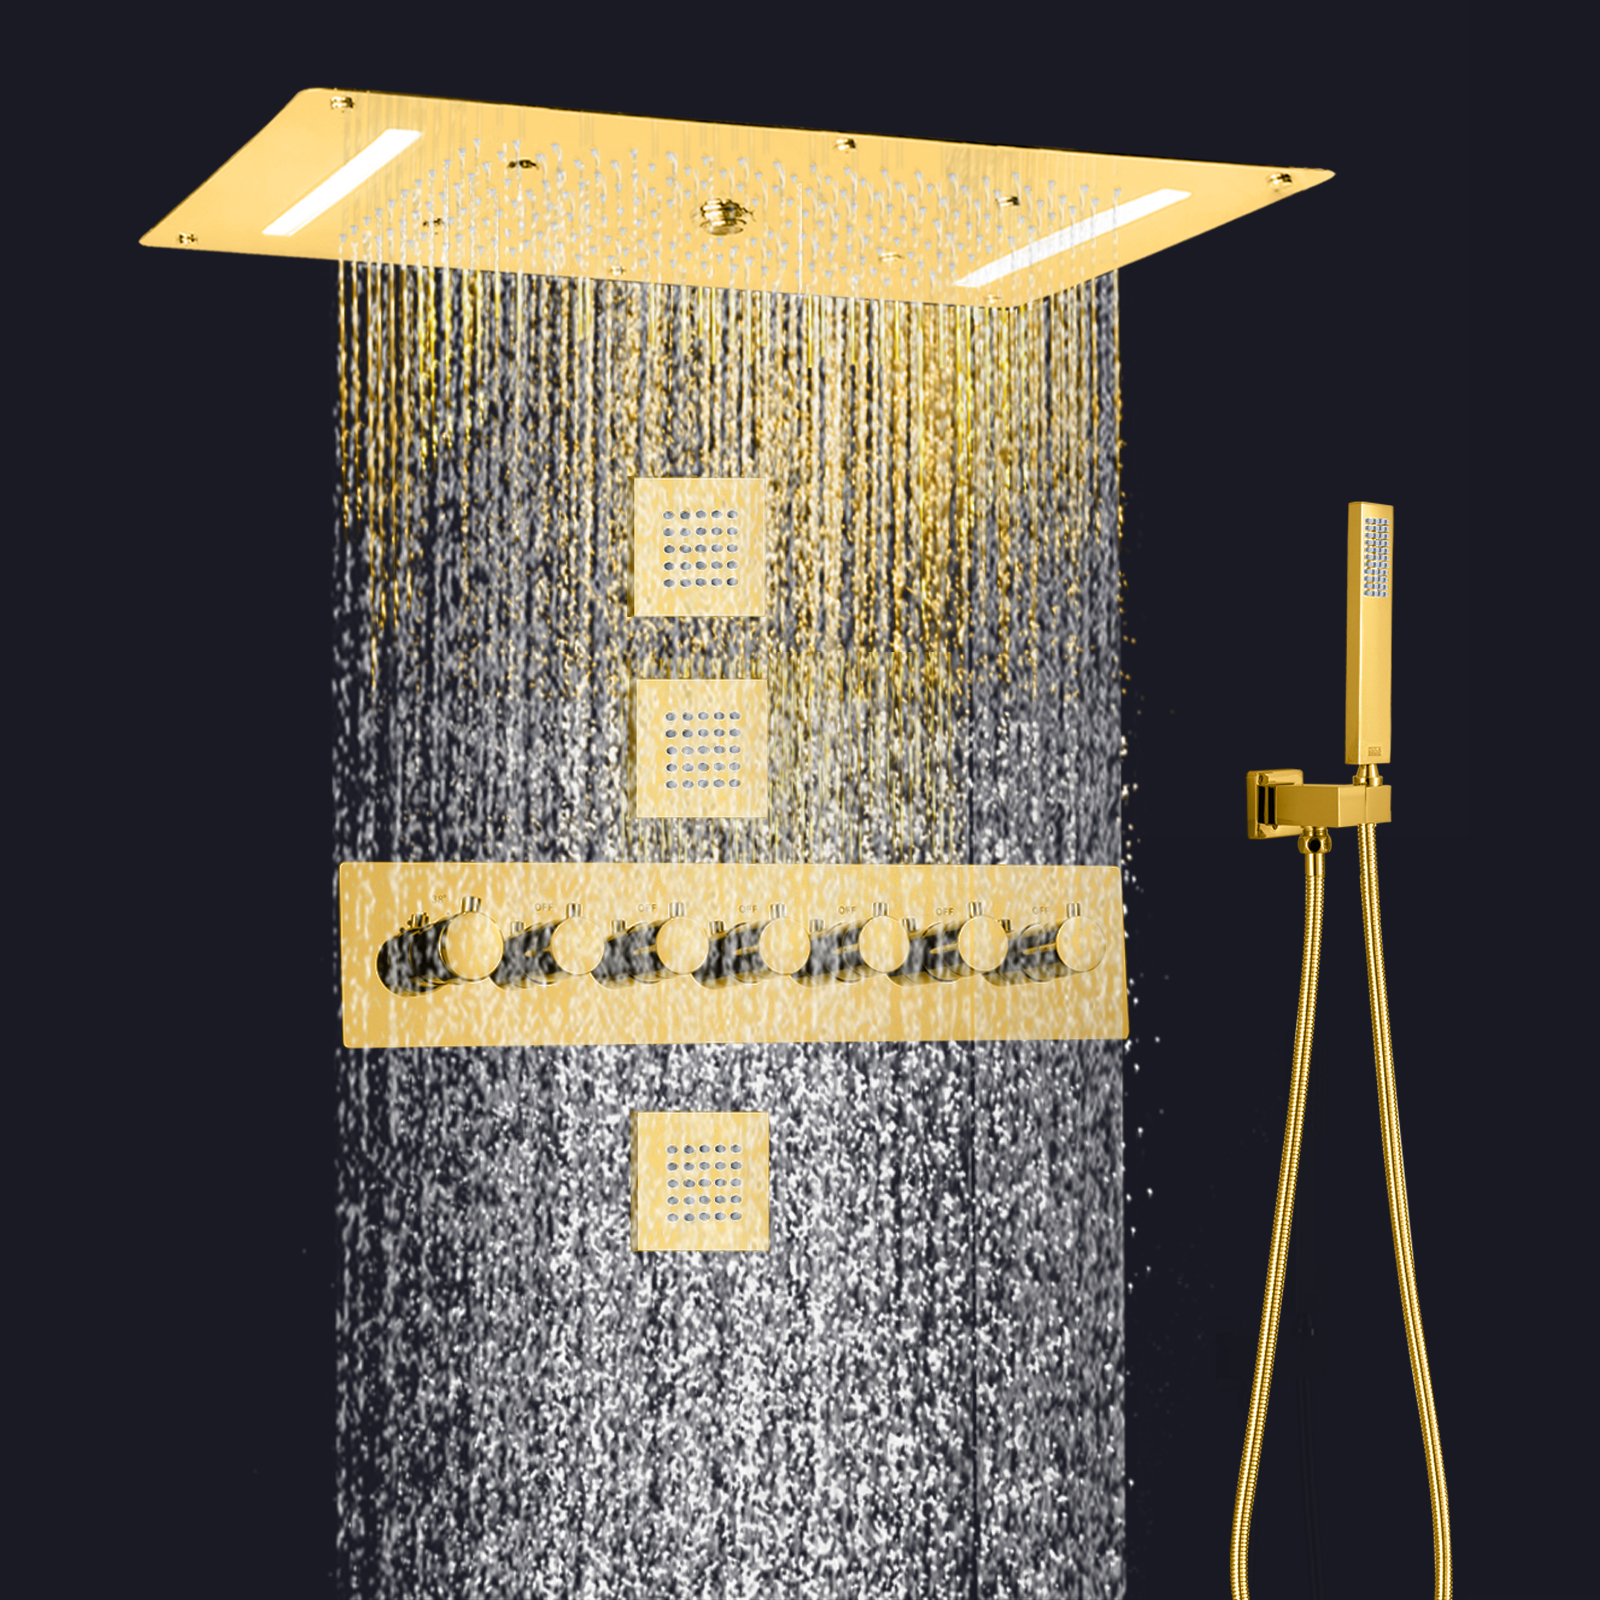 نظام دش ثرموستاتي LED فاخر 700 × 380 مم مصقول بالذهب، خلاط دش شلال الأمطار، حامل يدوي